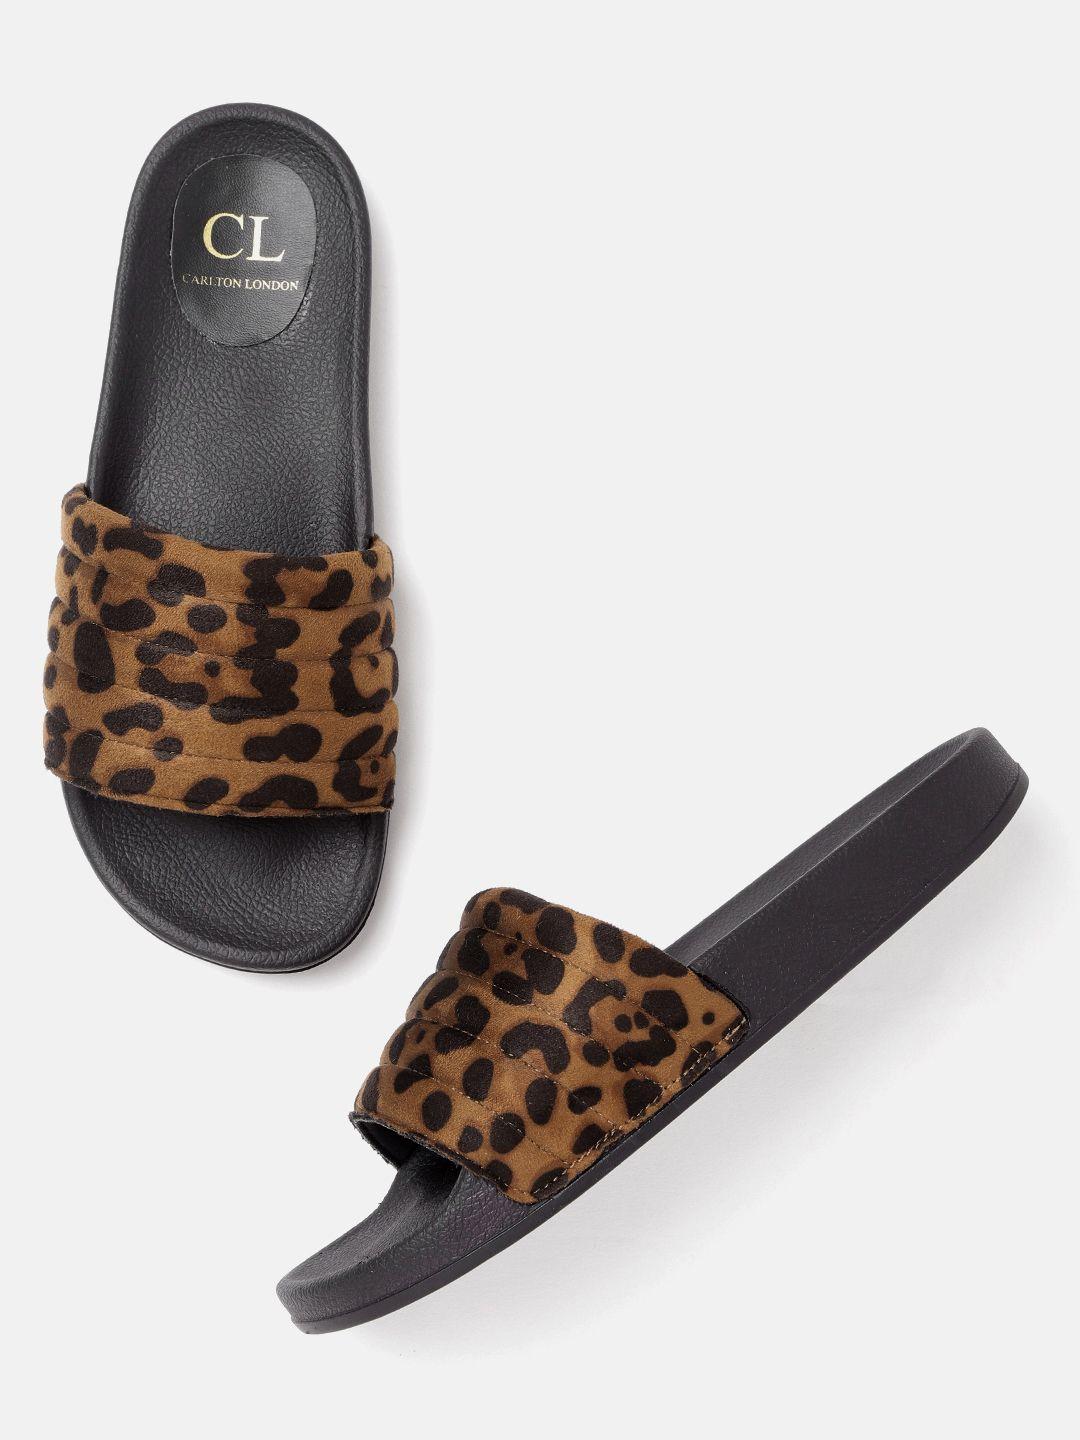 Carlton London Women Brown & Black Leopard Print Open Toe Flats